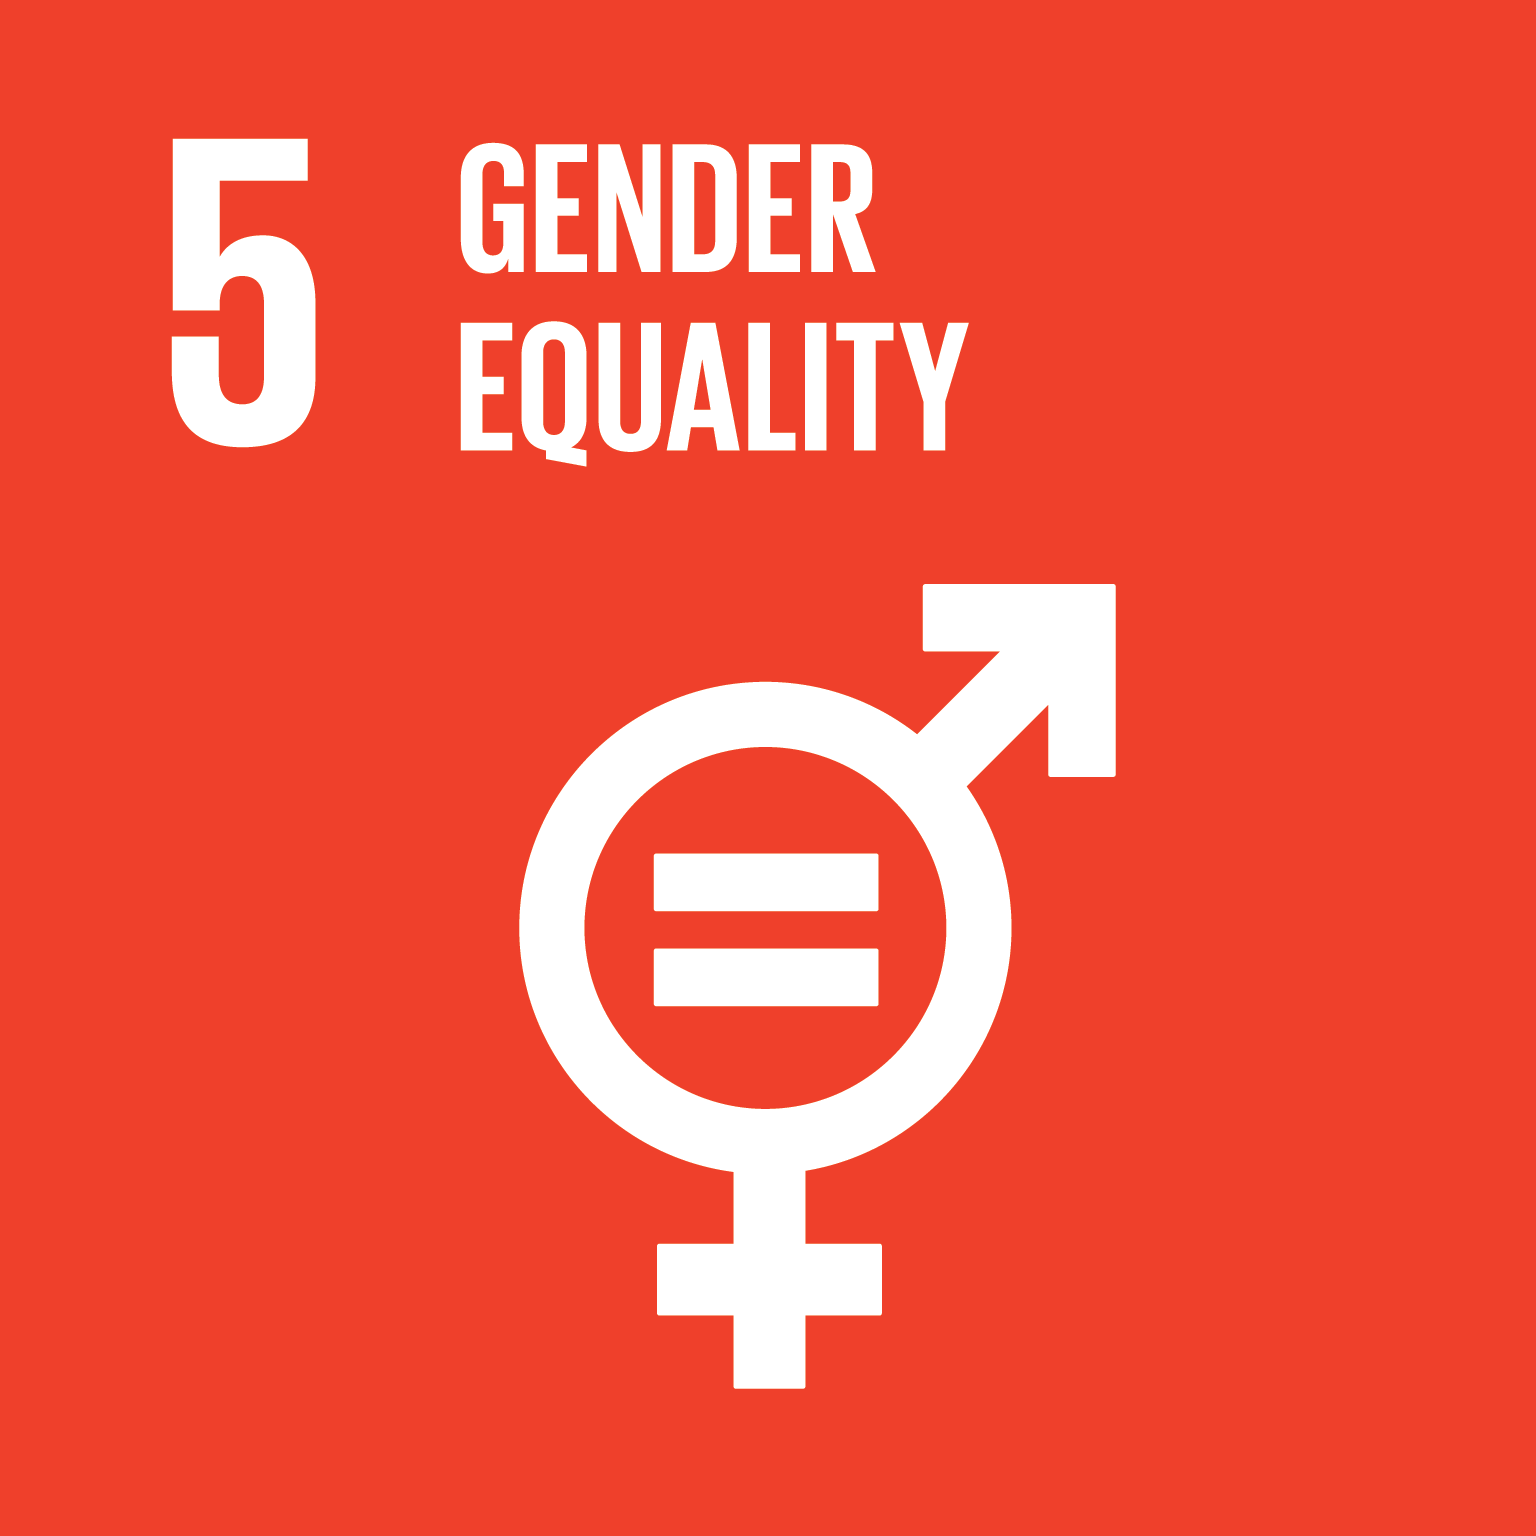 5. Gender equality 